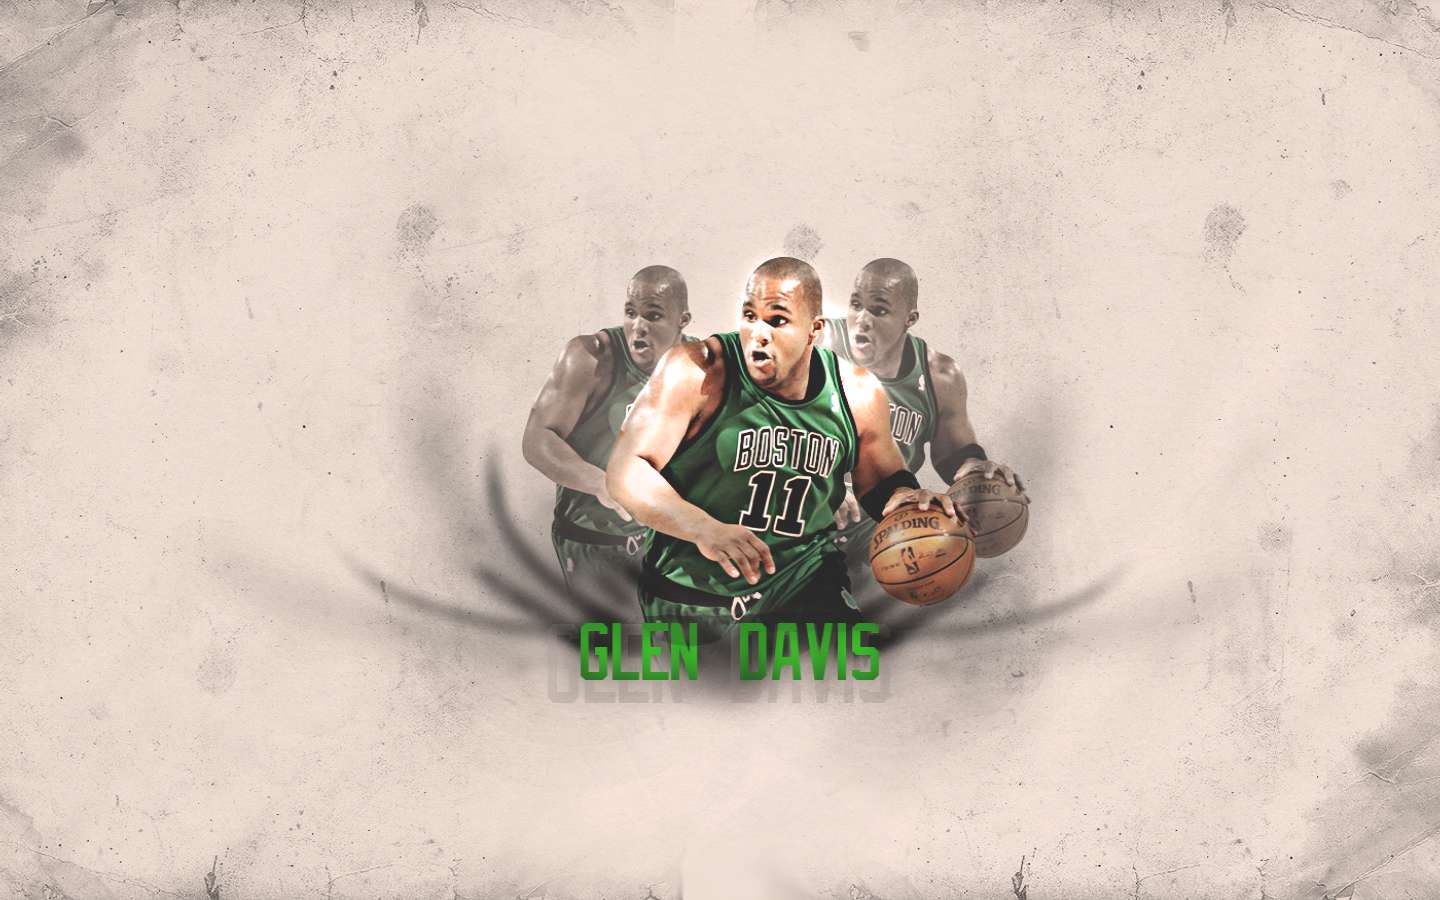 Glen Davis Celtics 2011 Widescreen Wallpaper. Basketball